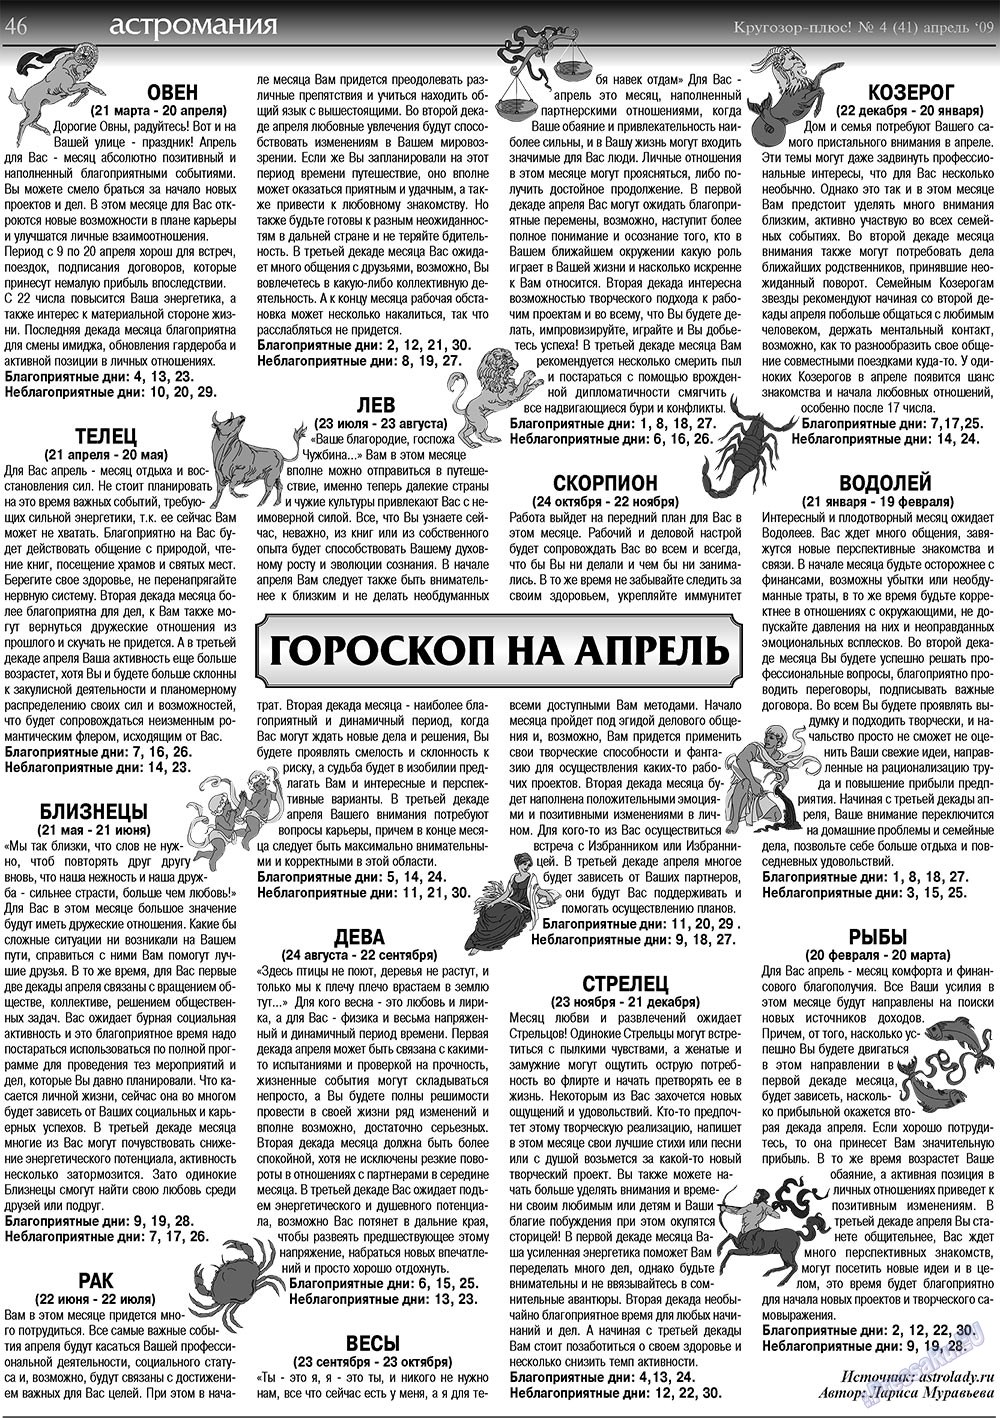 Кругозор плюс!, газета. 2009 №4 стр.46